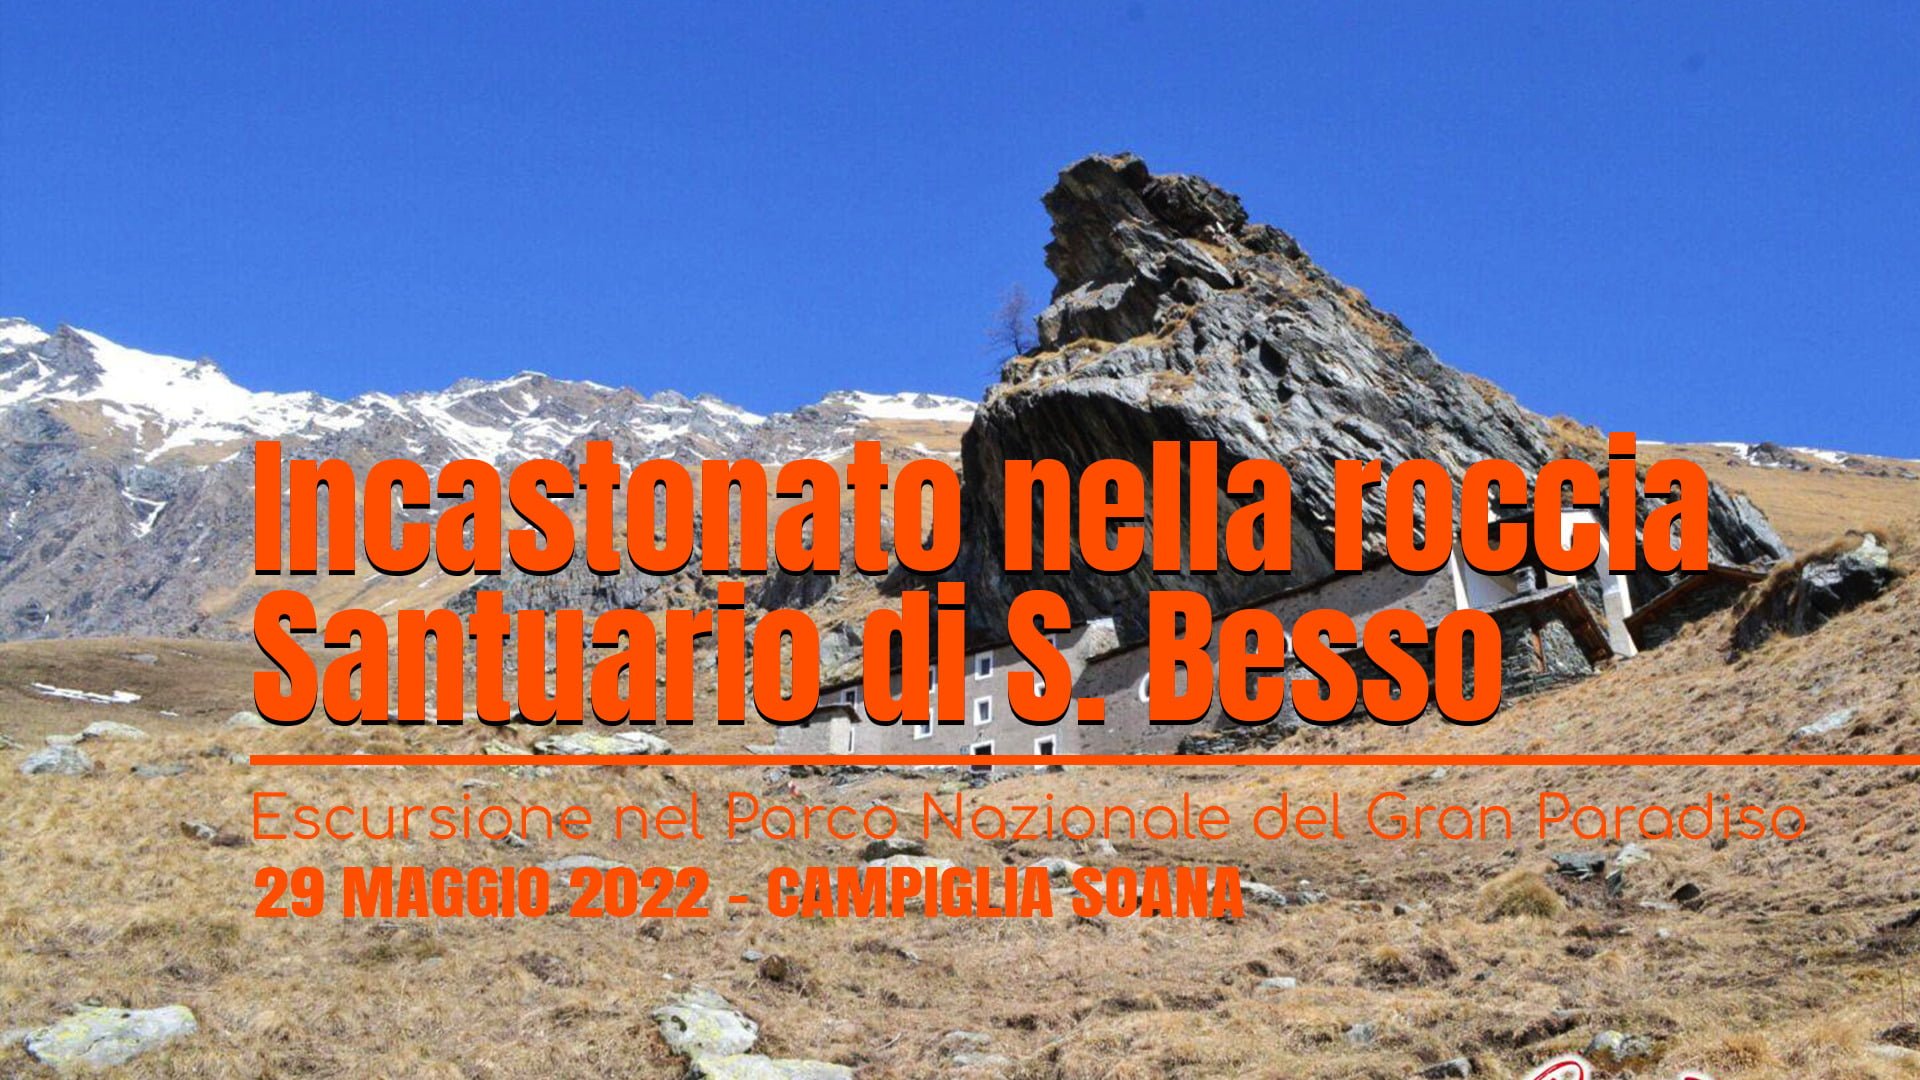 San Besso | il santuario incastonato nella roccia